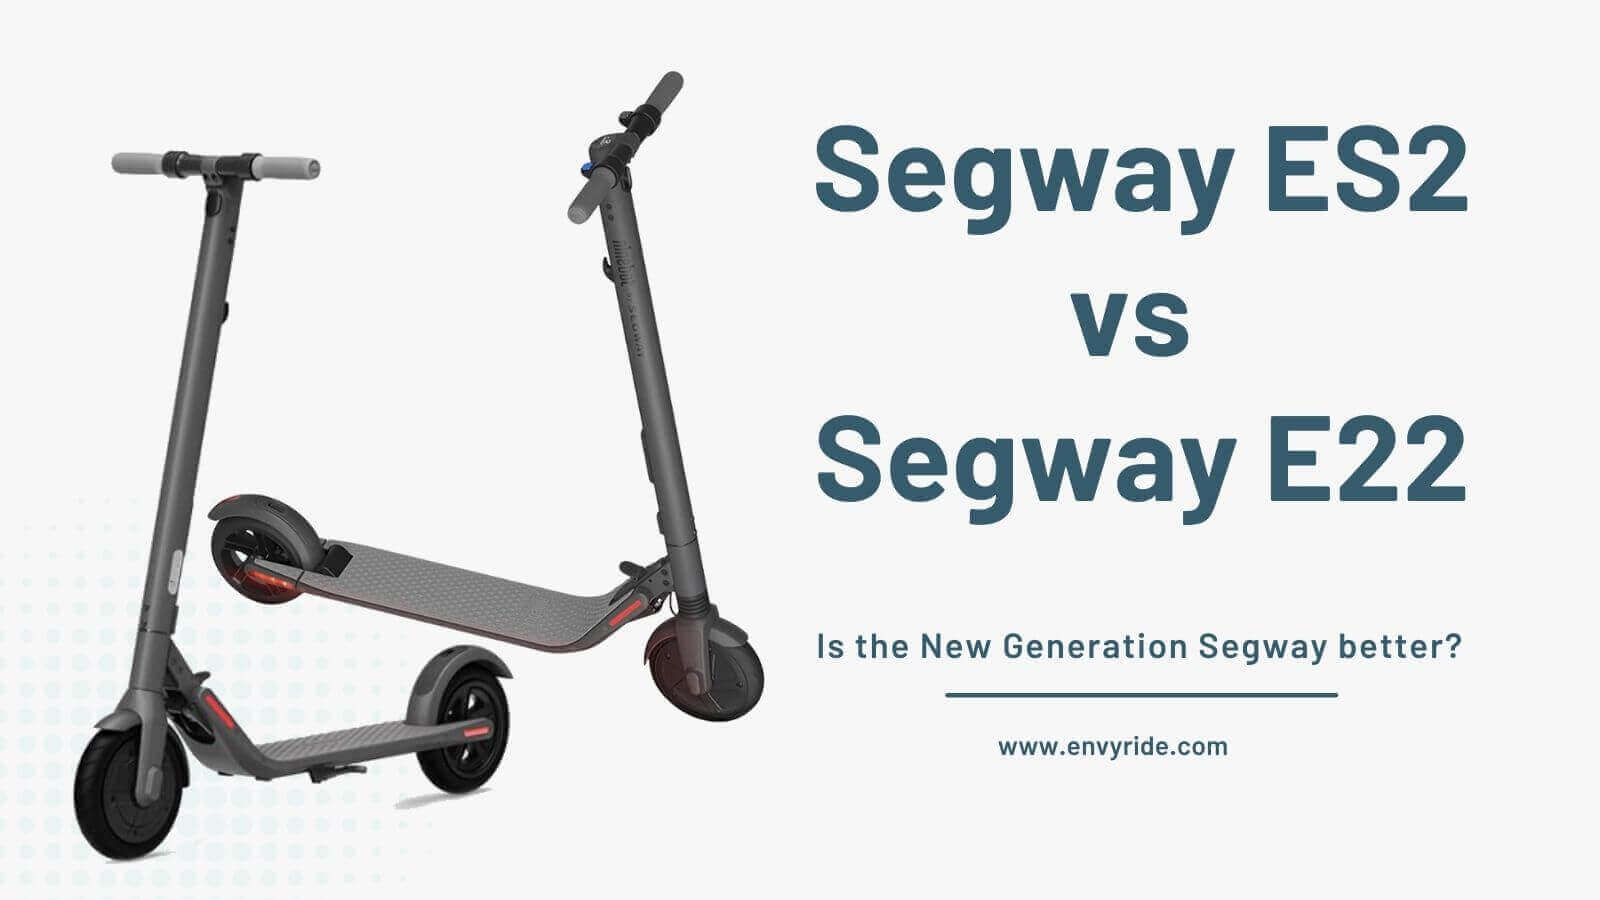 Segway ES2 vs Segway E22